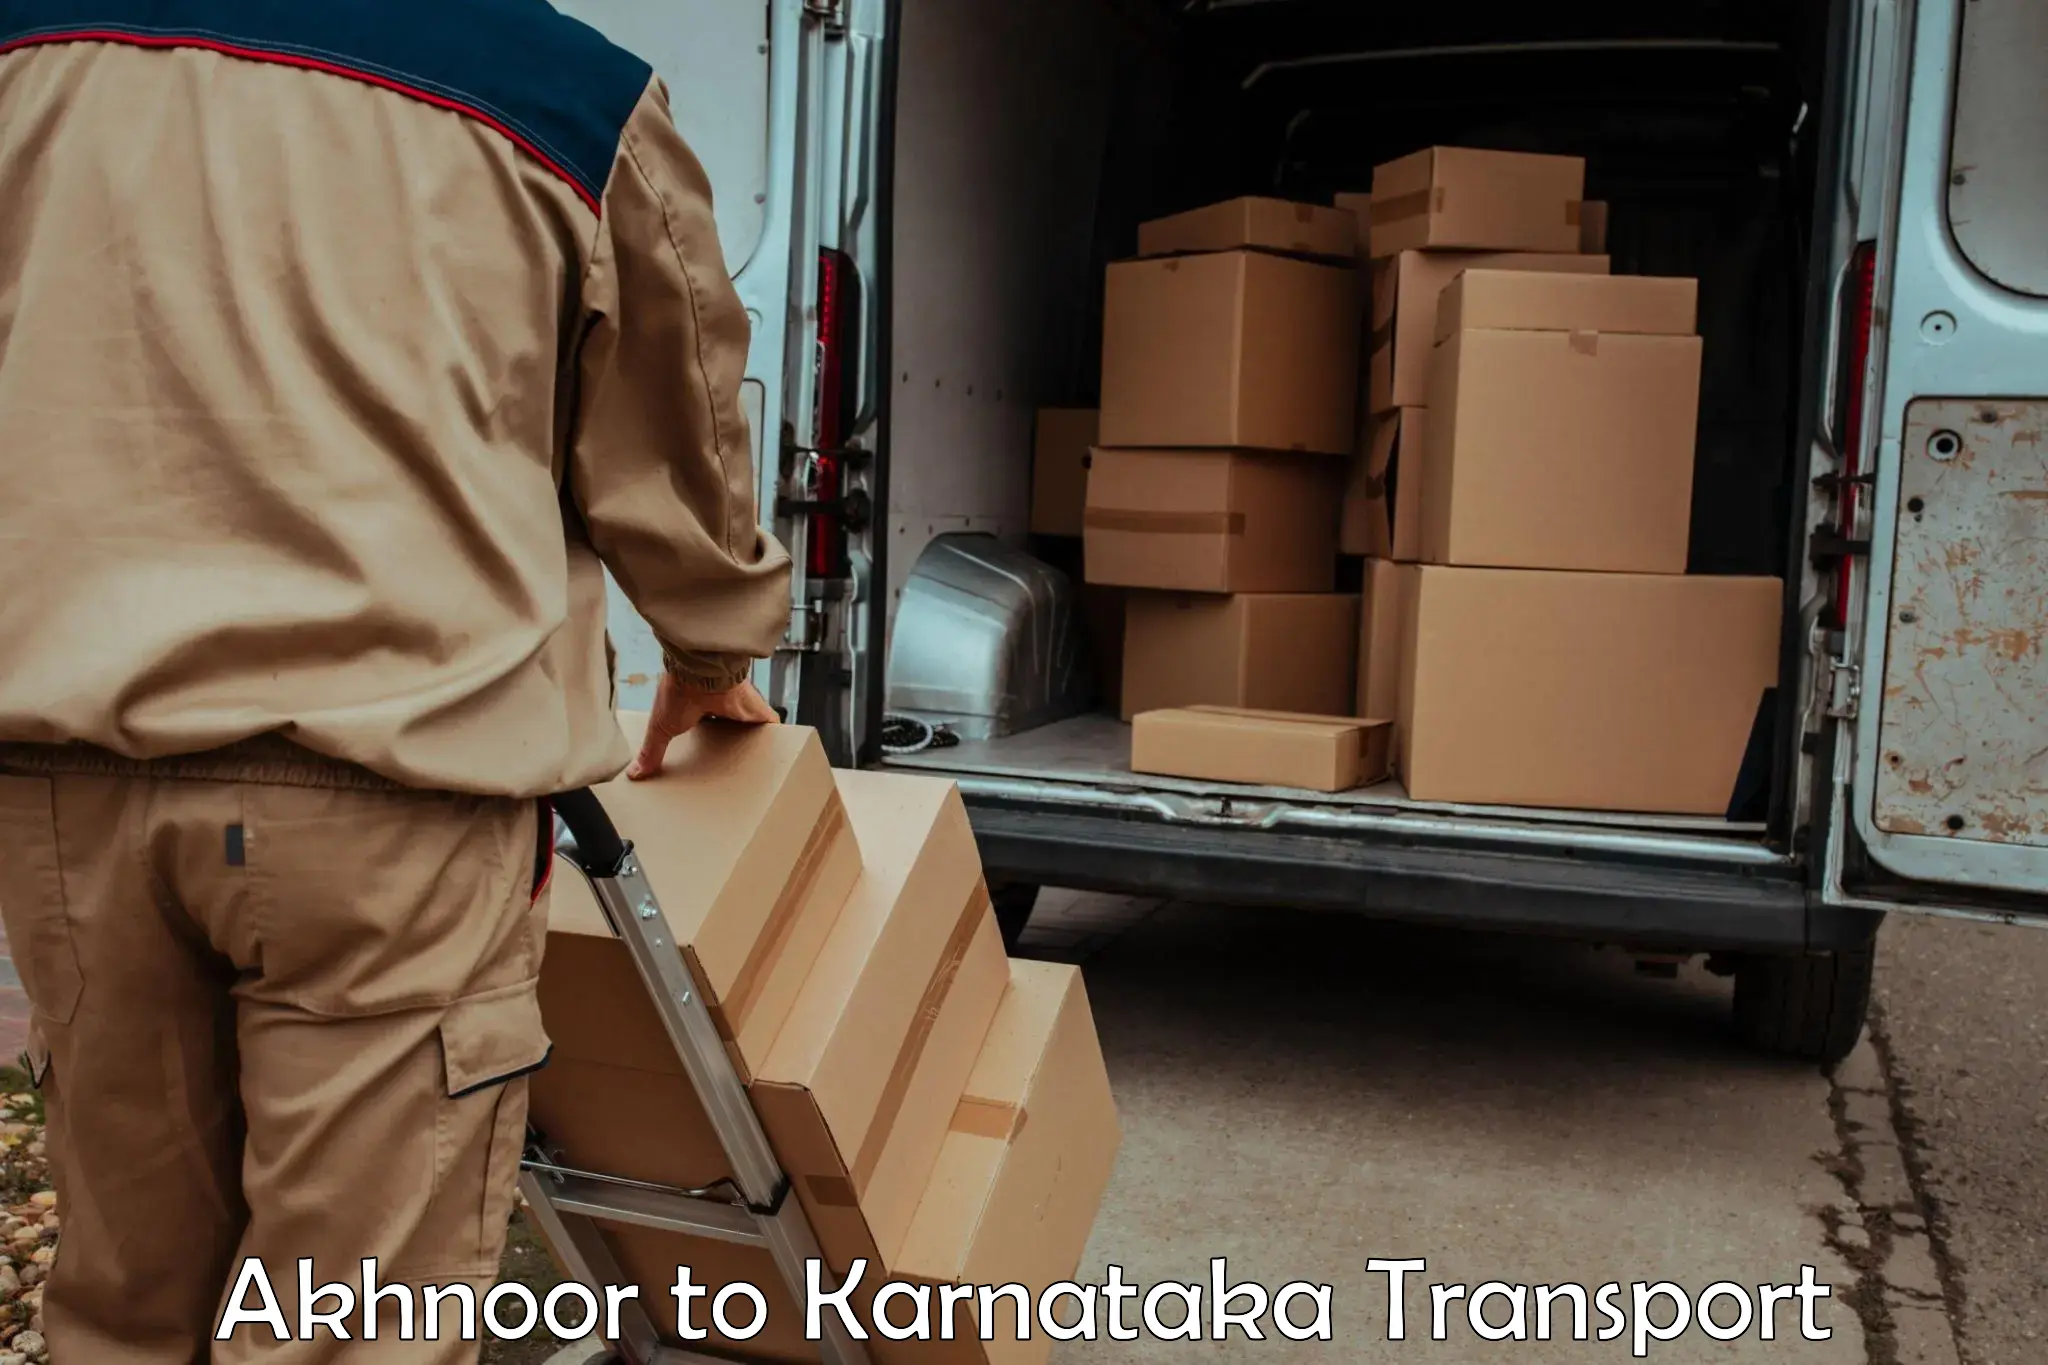 Lorry transport service Akhnoor to Madikeri